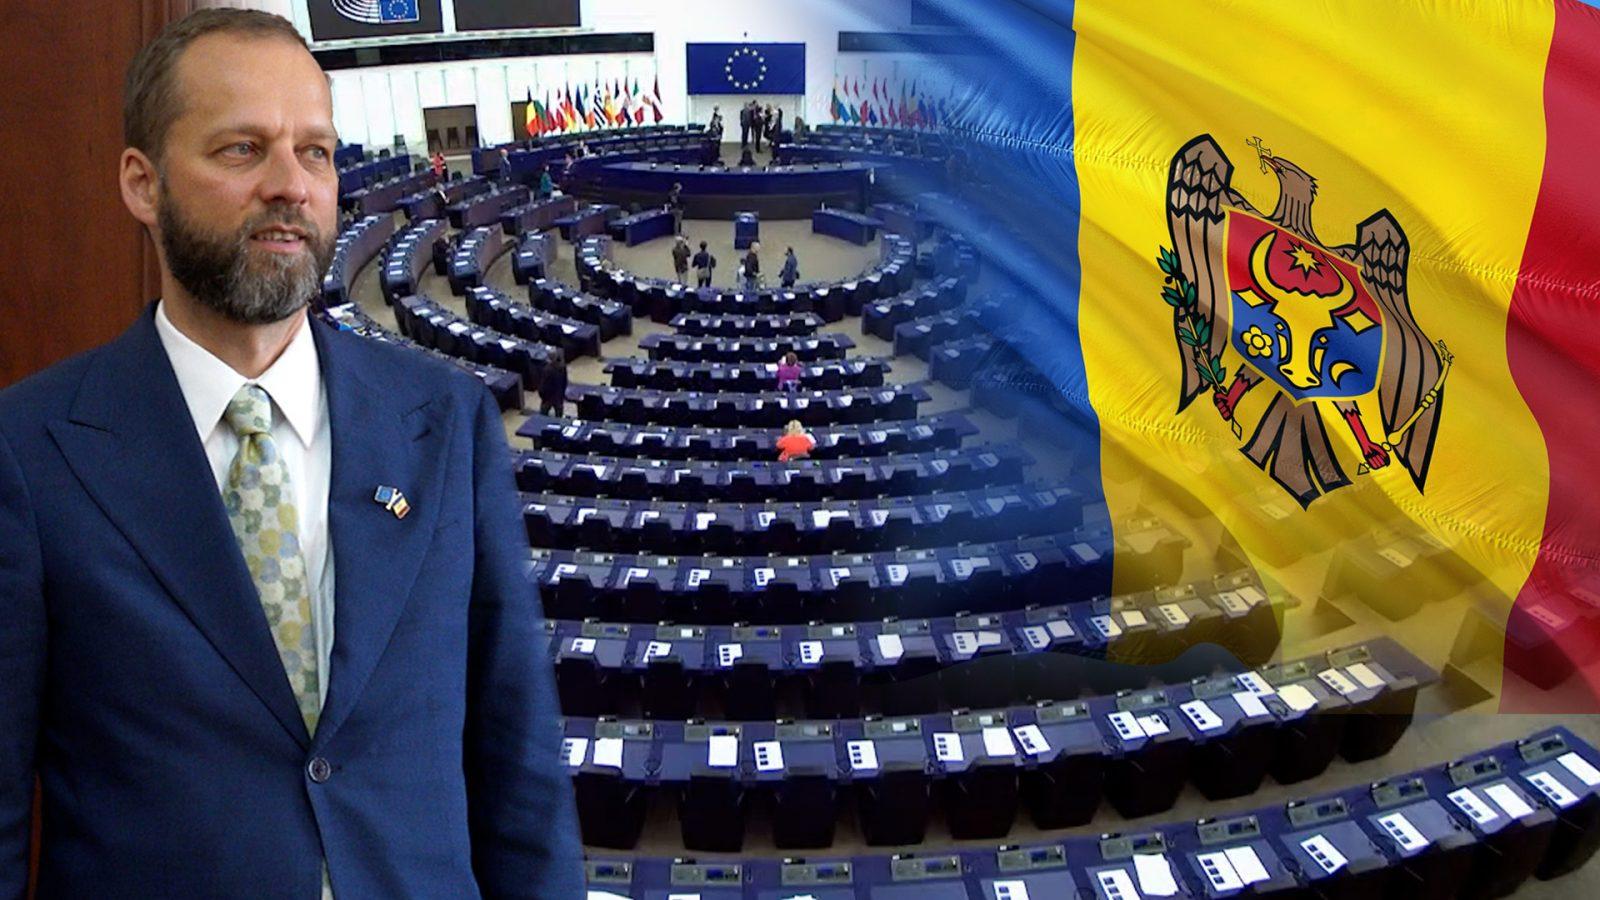 /VIDEO/ Jānis Mažeiks: „Scutiri nu vor fi. Republica Moldova mai are mult de lucru pentru a putea adera la UE”